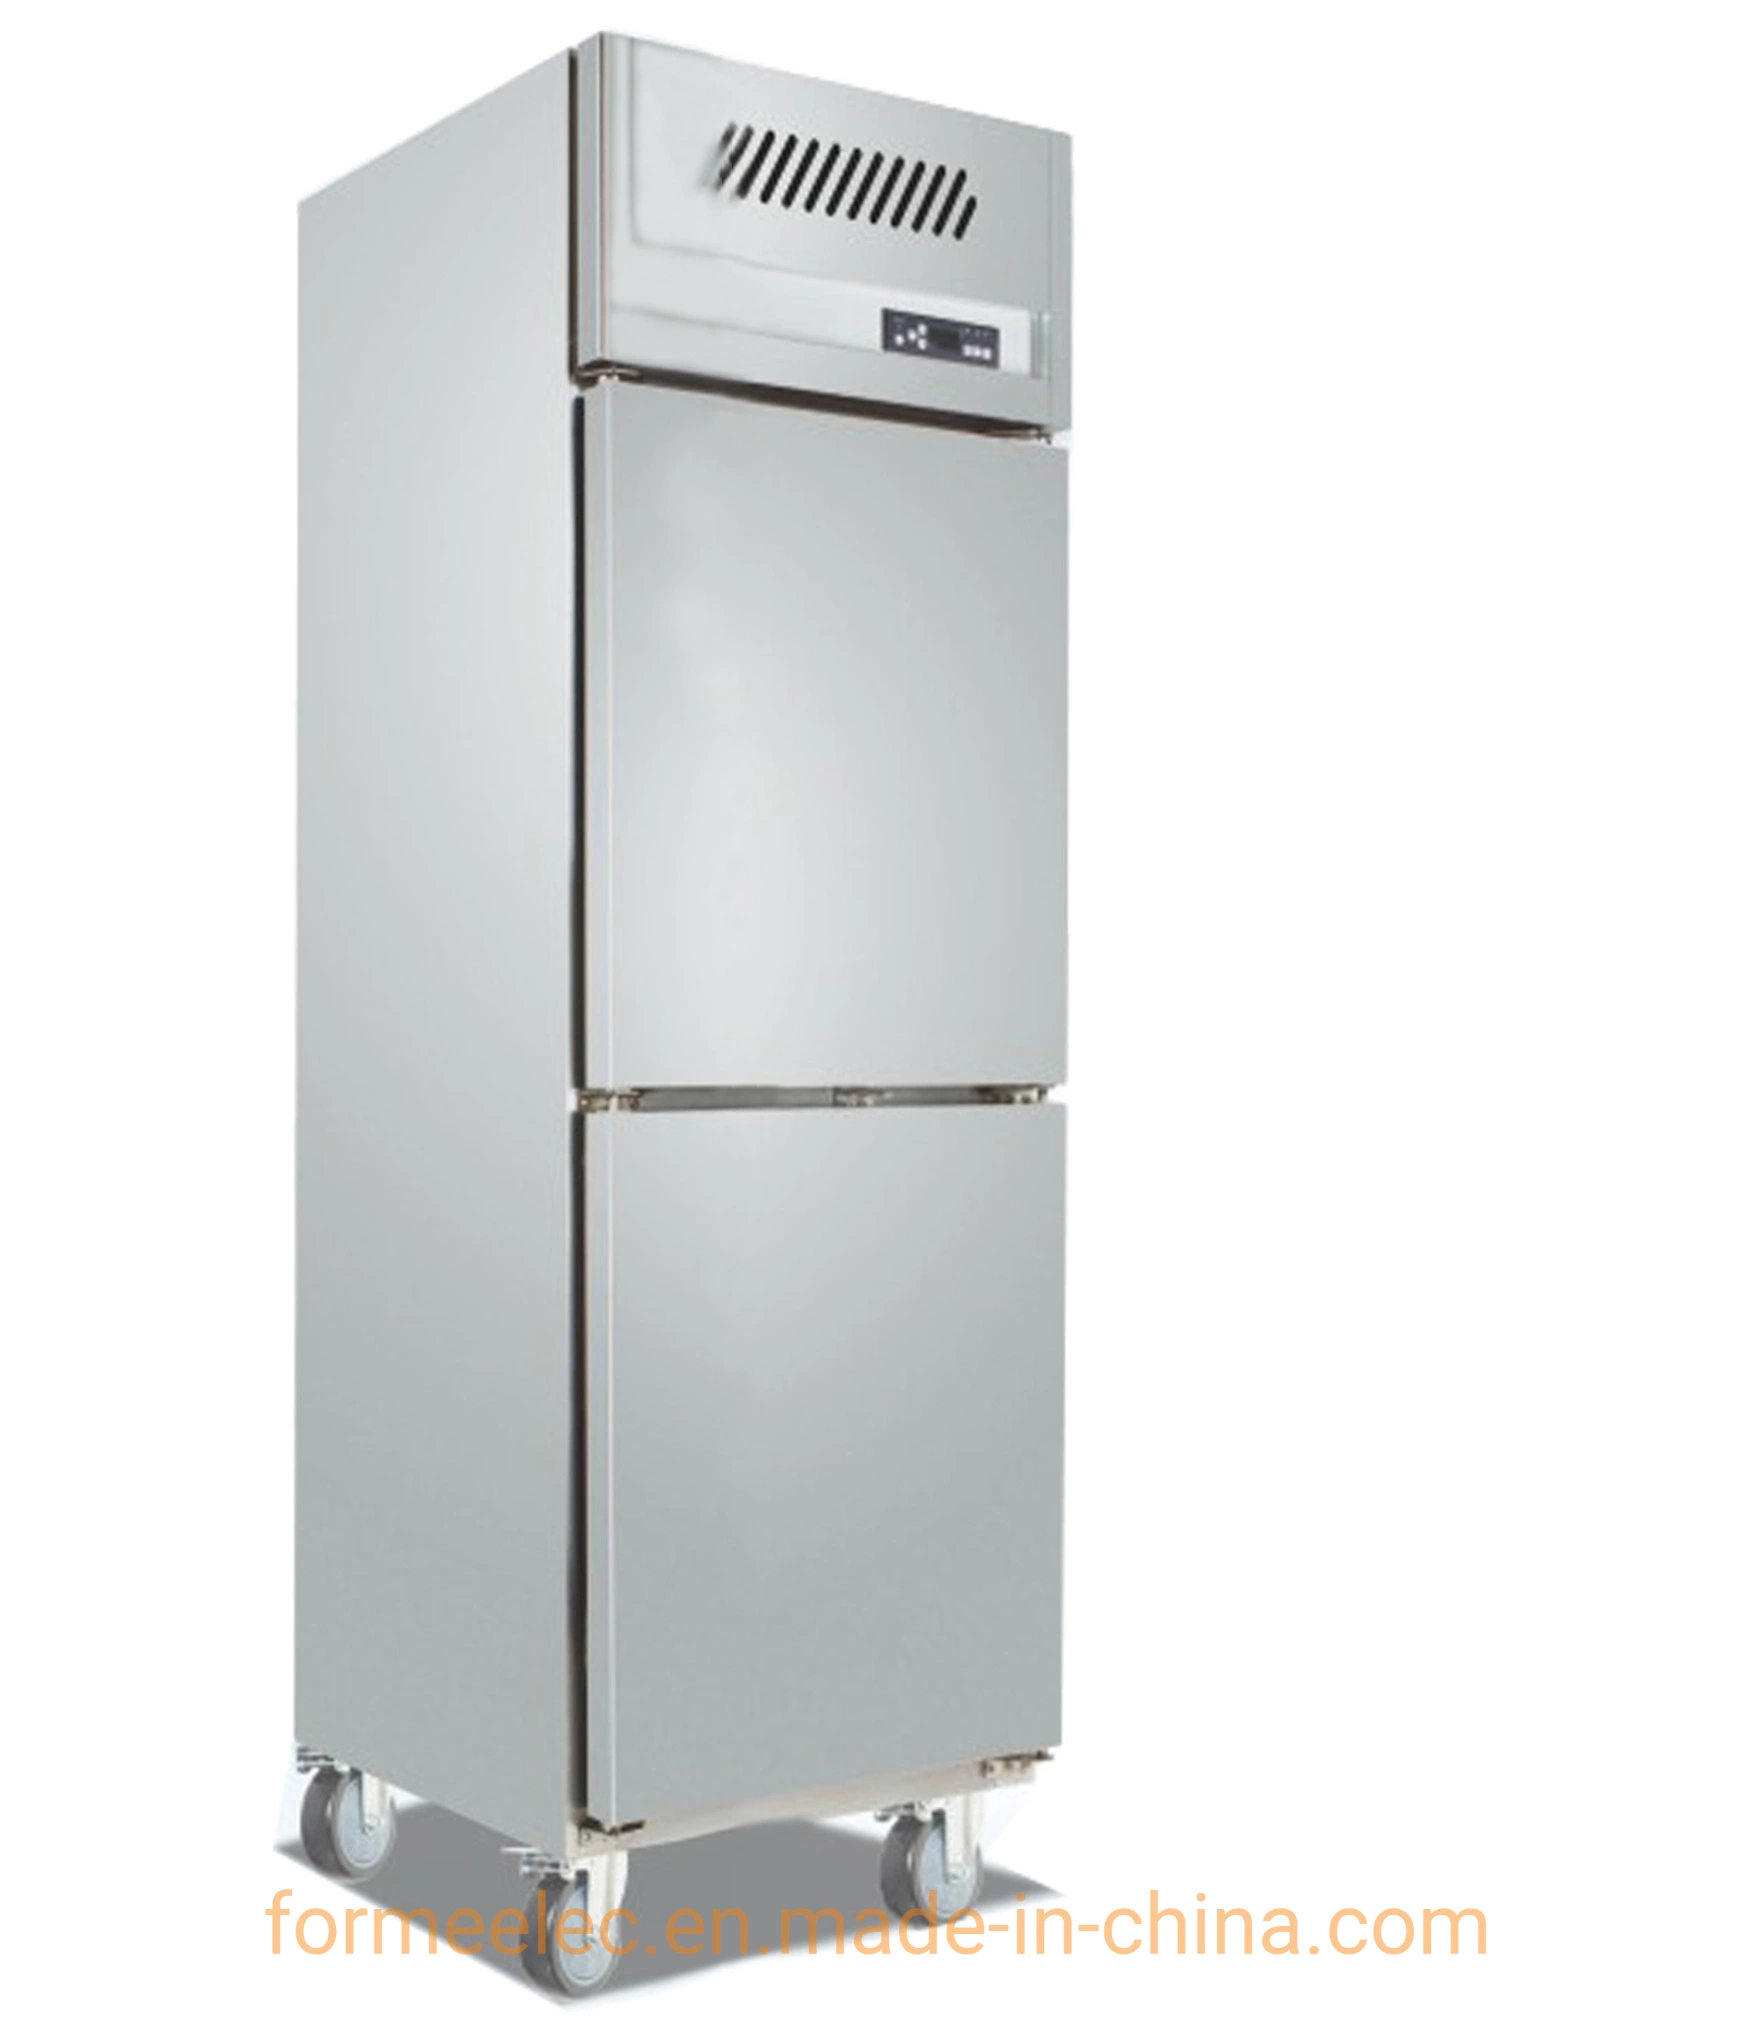 500L Kitchen Refrigeration Equipment Kitchen Refrigerator Air Cooling Kitchen Freezer